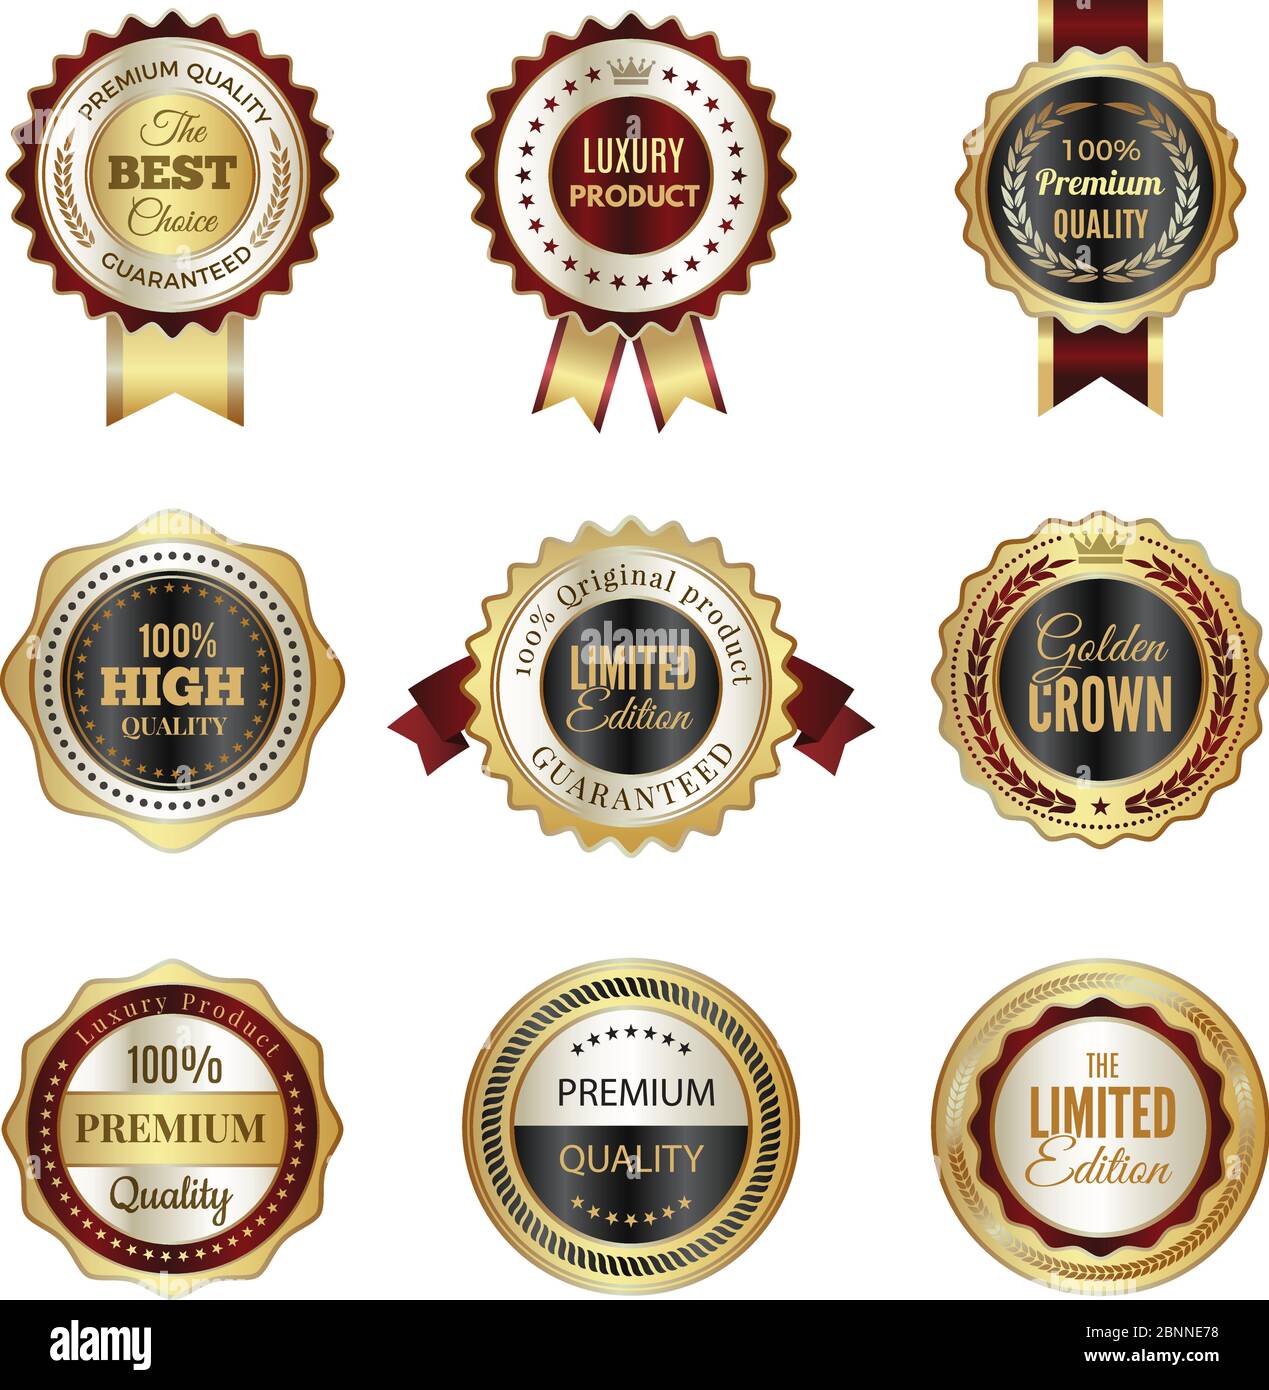 Goldene Etiketten. Premium Service Krone Luxus beste Wahl Stempel Vorlagen Vektor-Design von farbigen Logos Stock Vektor